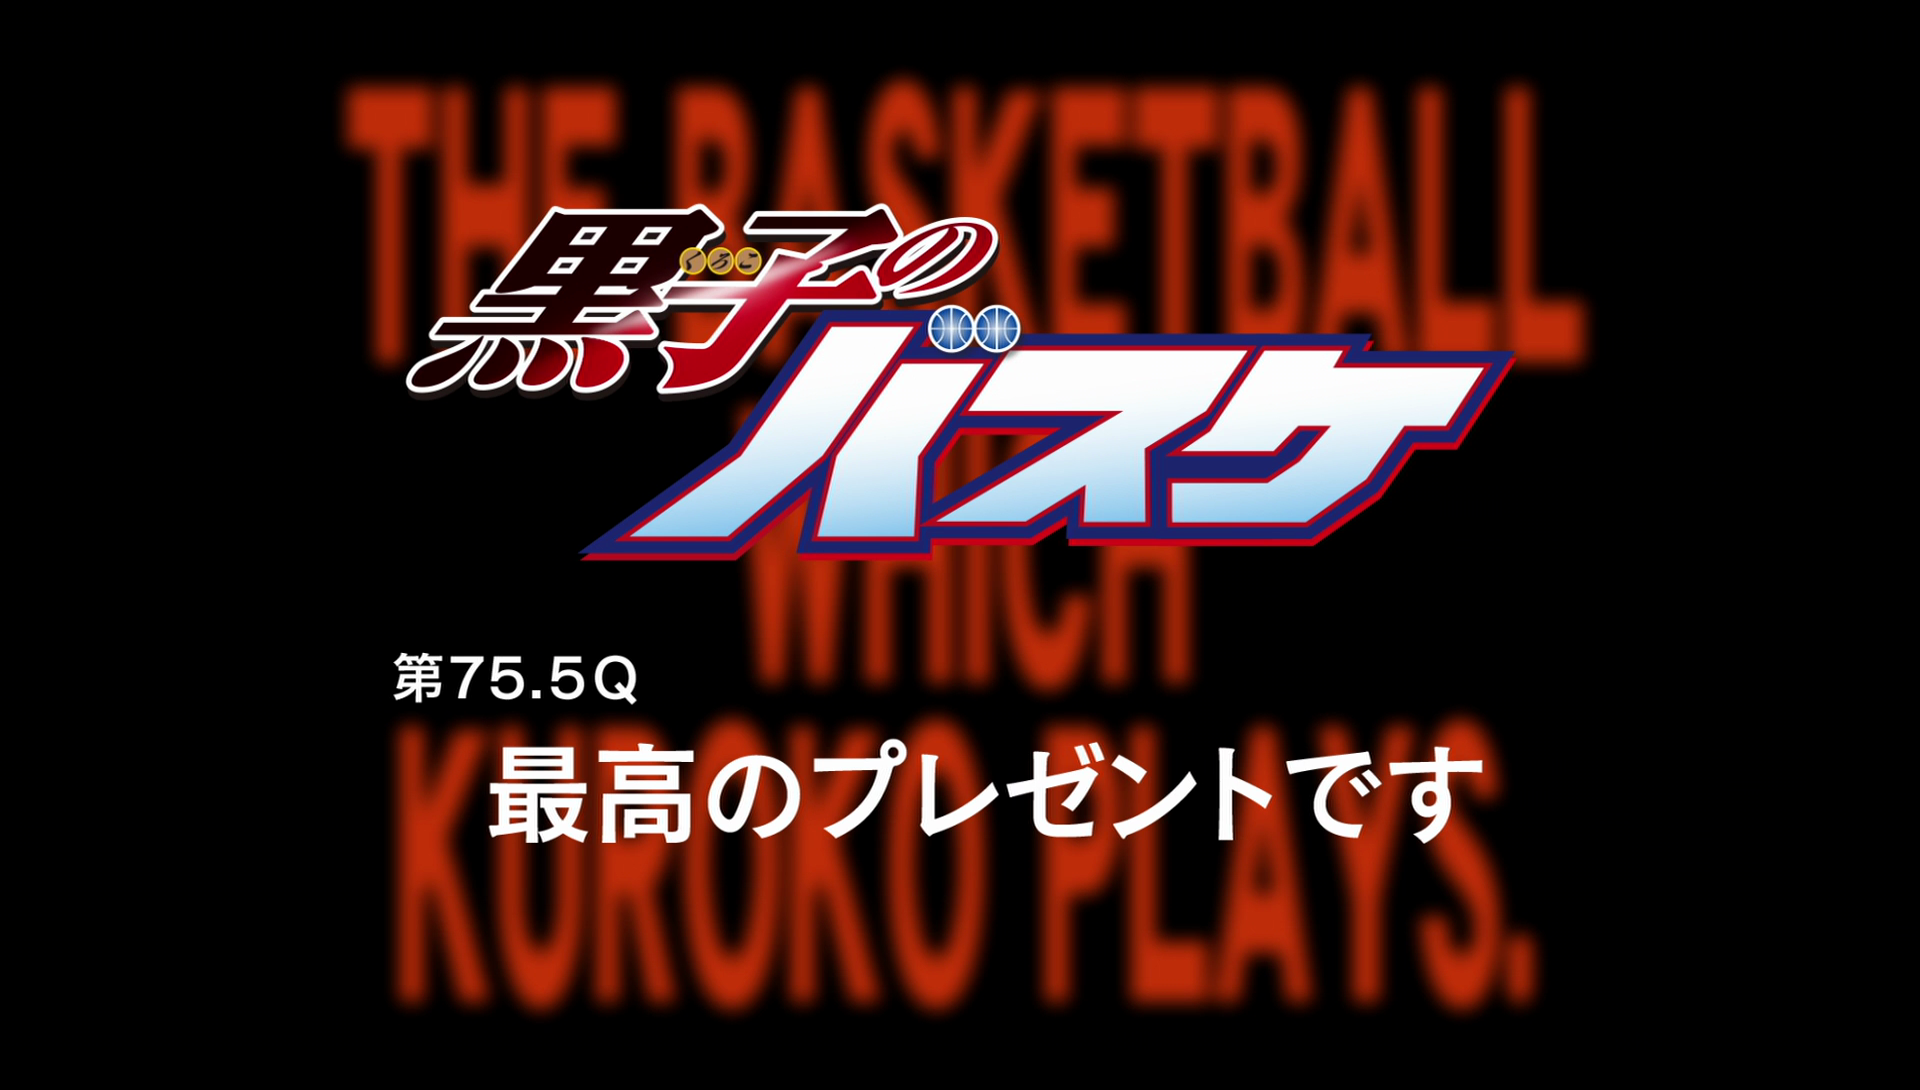 Kuroko no Basket: Saikou no Present Desu - Kuroko no Basket Saikou no  Present Desu - Animes Online